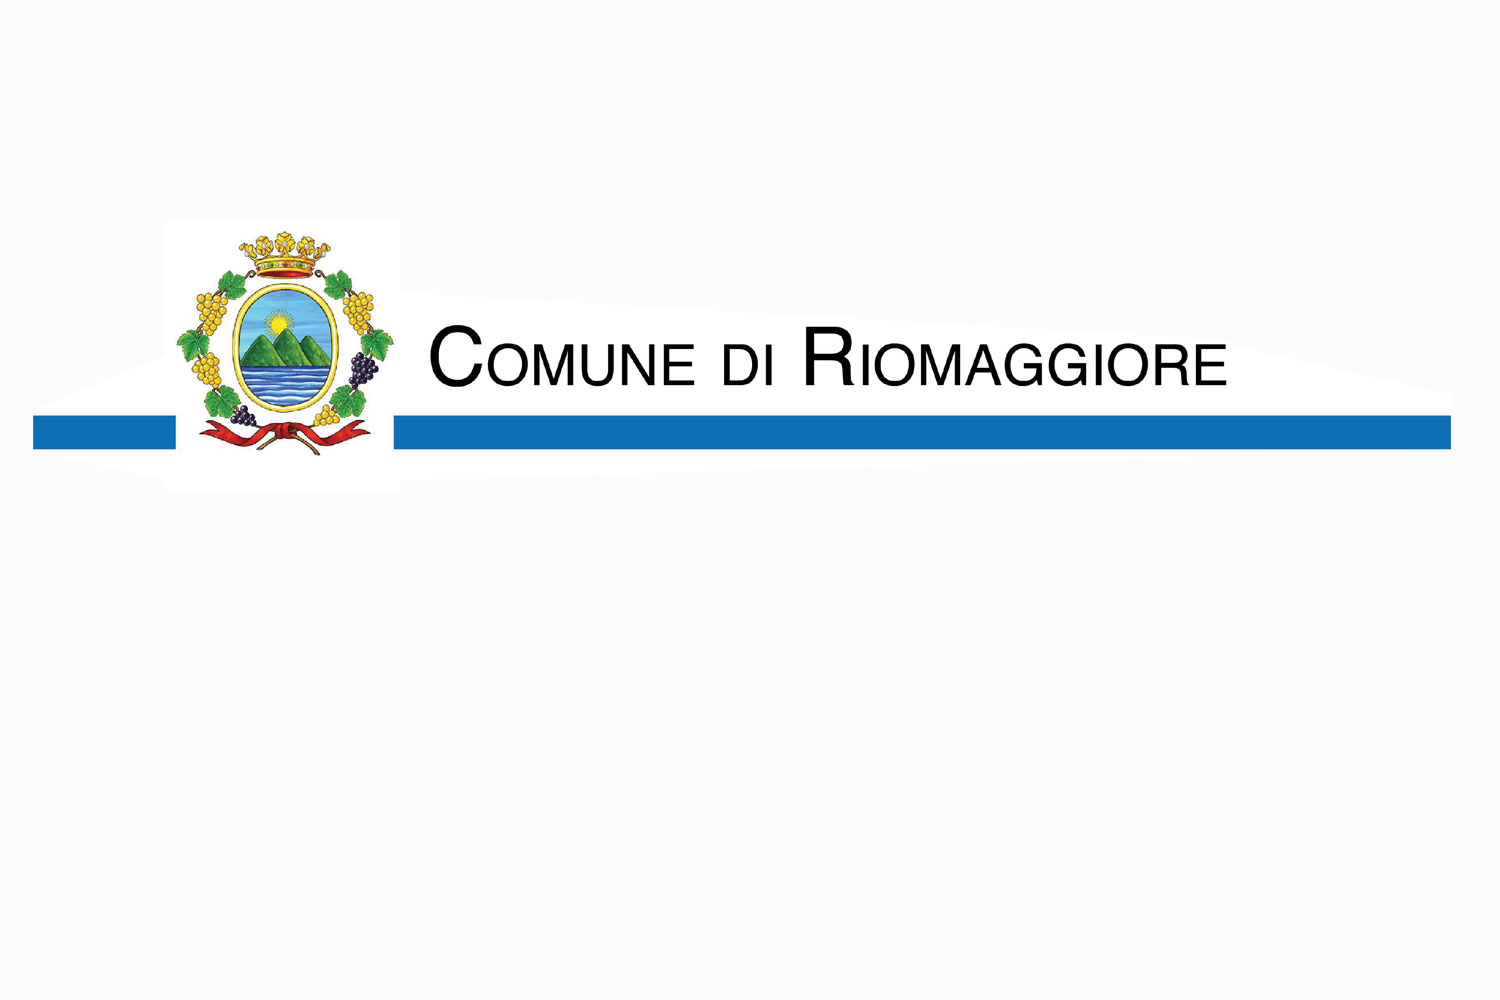 Lavori pubblici a Riomaggiore: in arrivo nuovi finanziamenti.